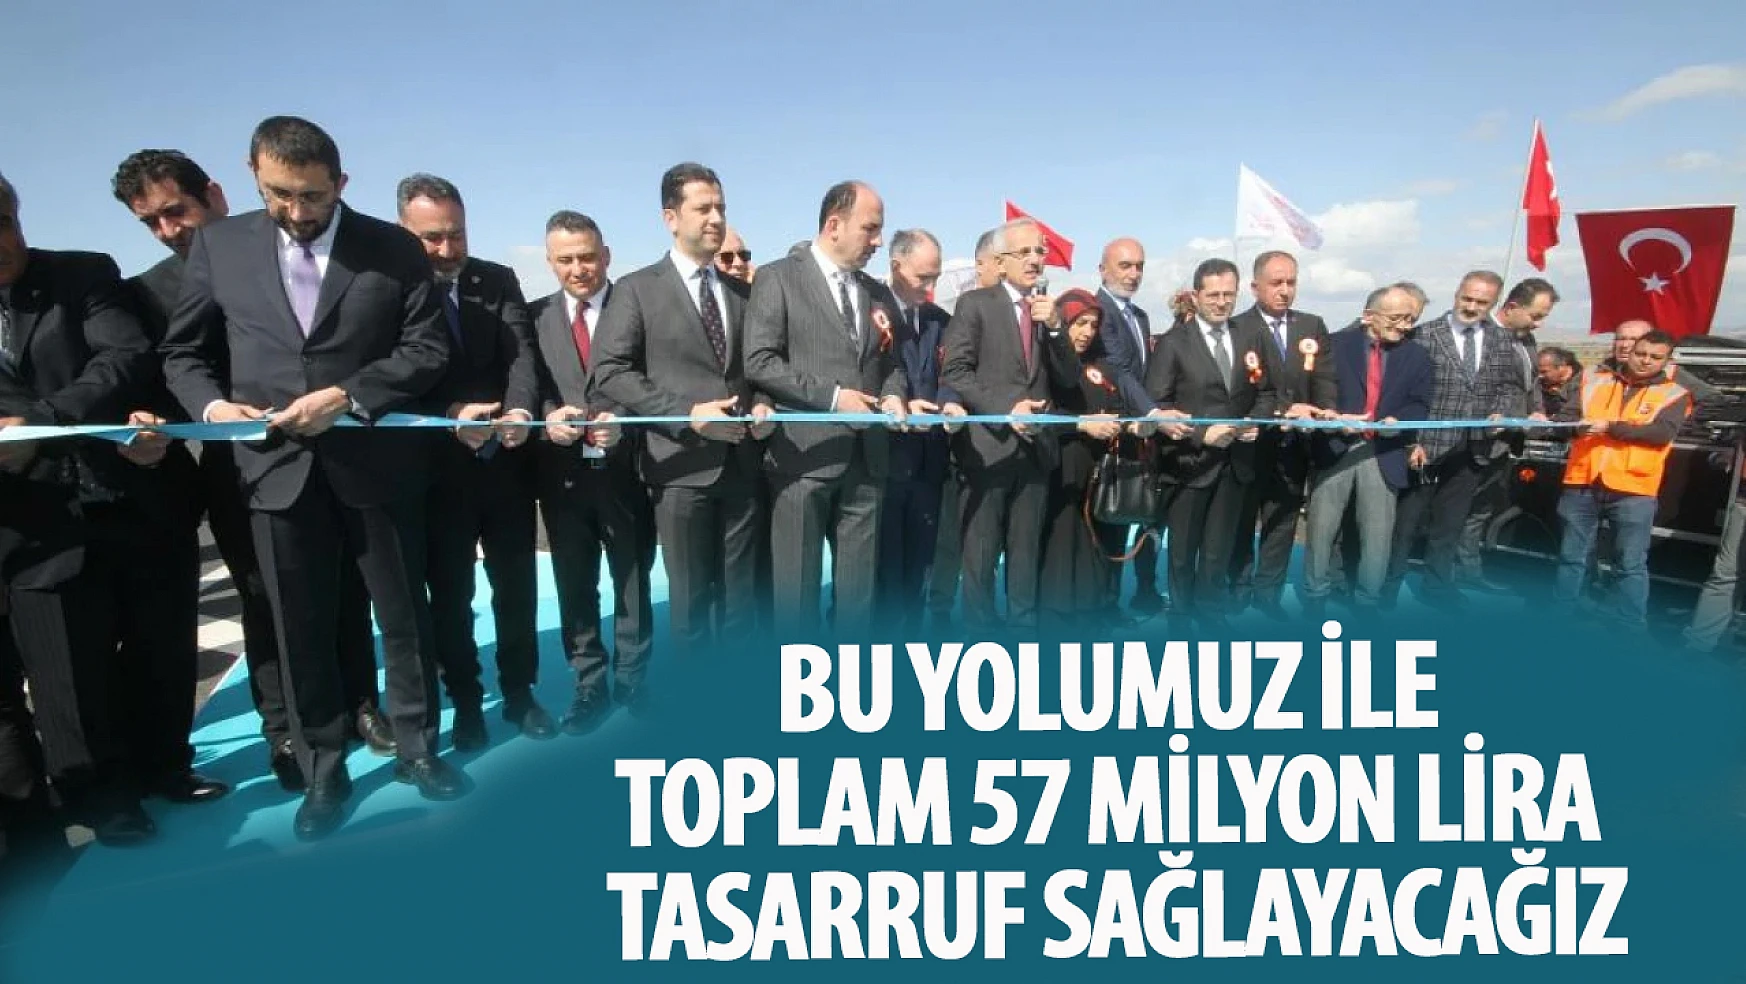 Uraloğlu: Bu yolumuz ile toplam 57 milyon lira tasarruf sağlayacağız!